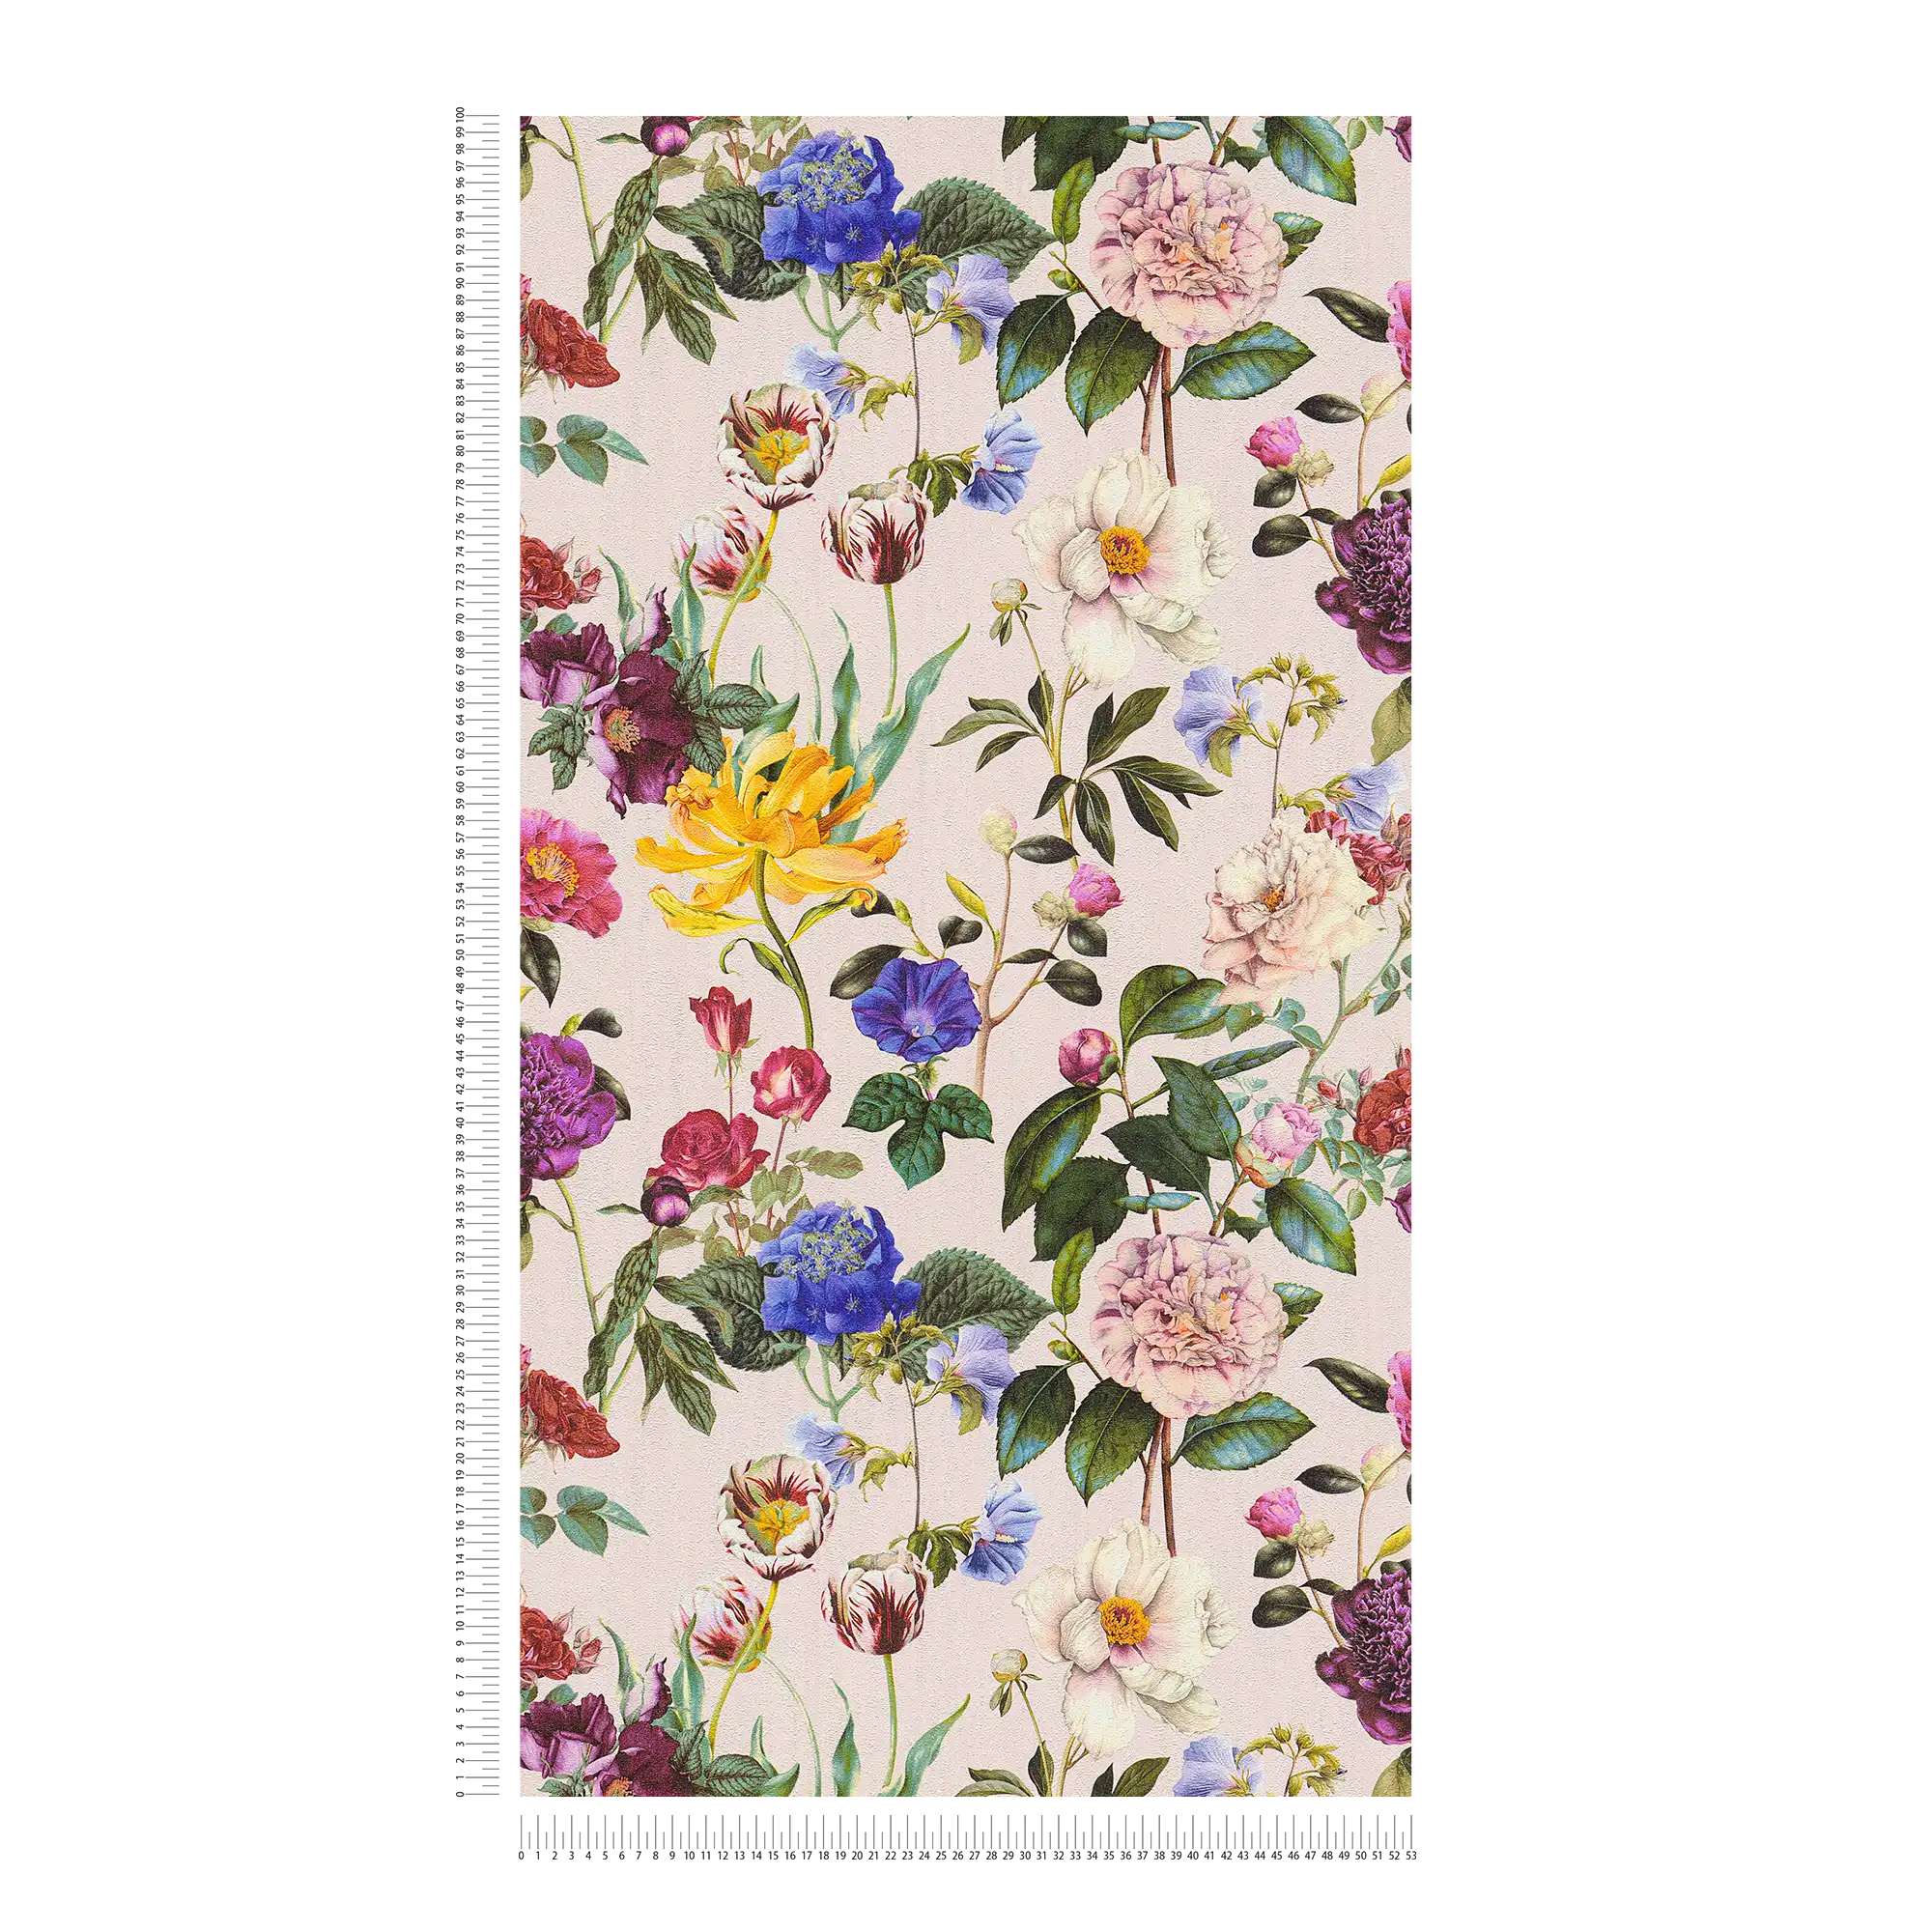             Papier peint fleuri avec des fleurs aux couleurs vives - multicolore, vert, rose
        